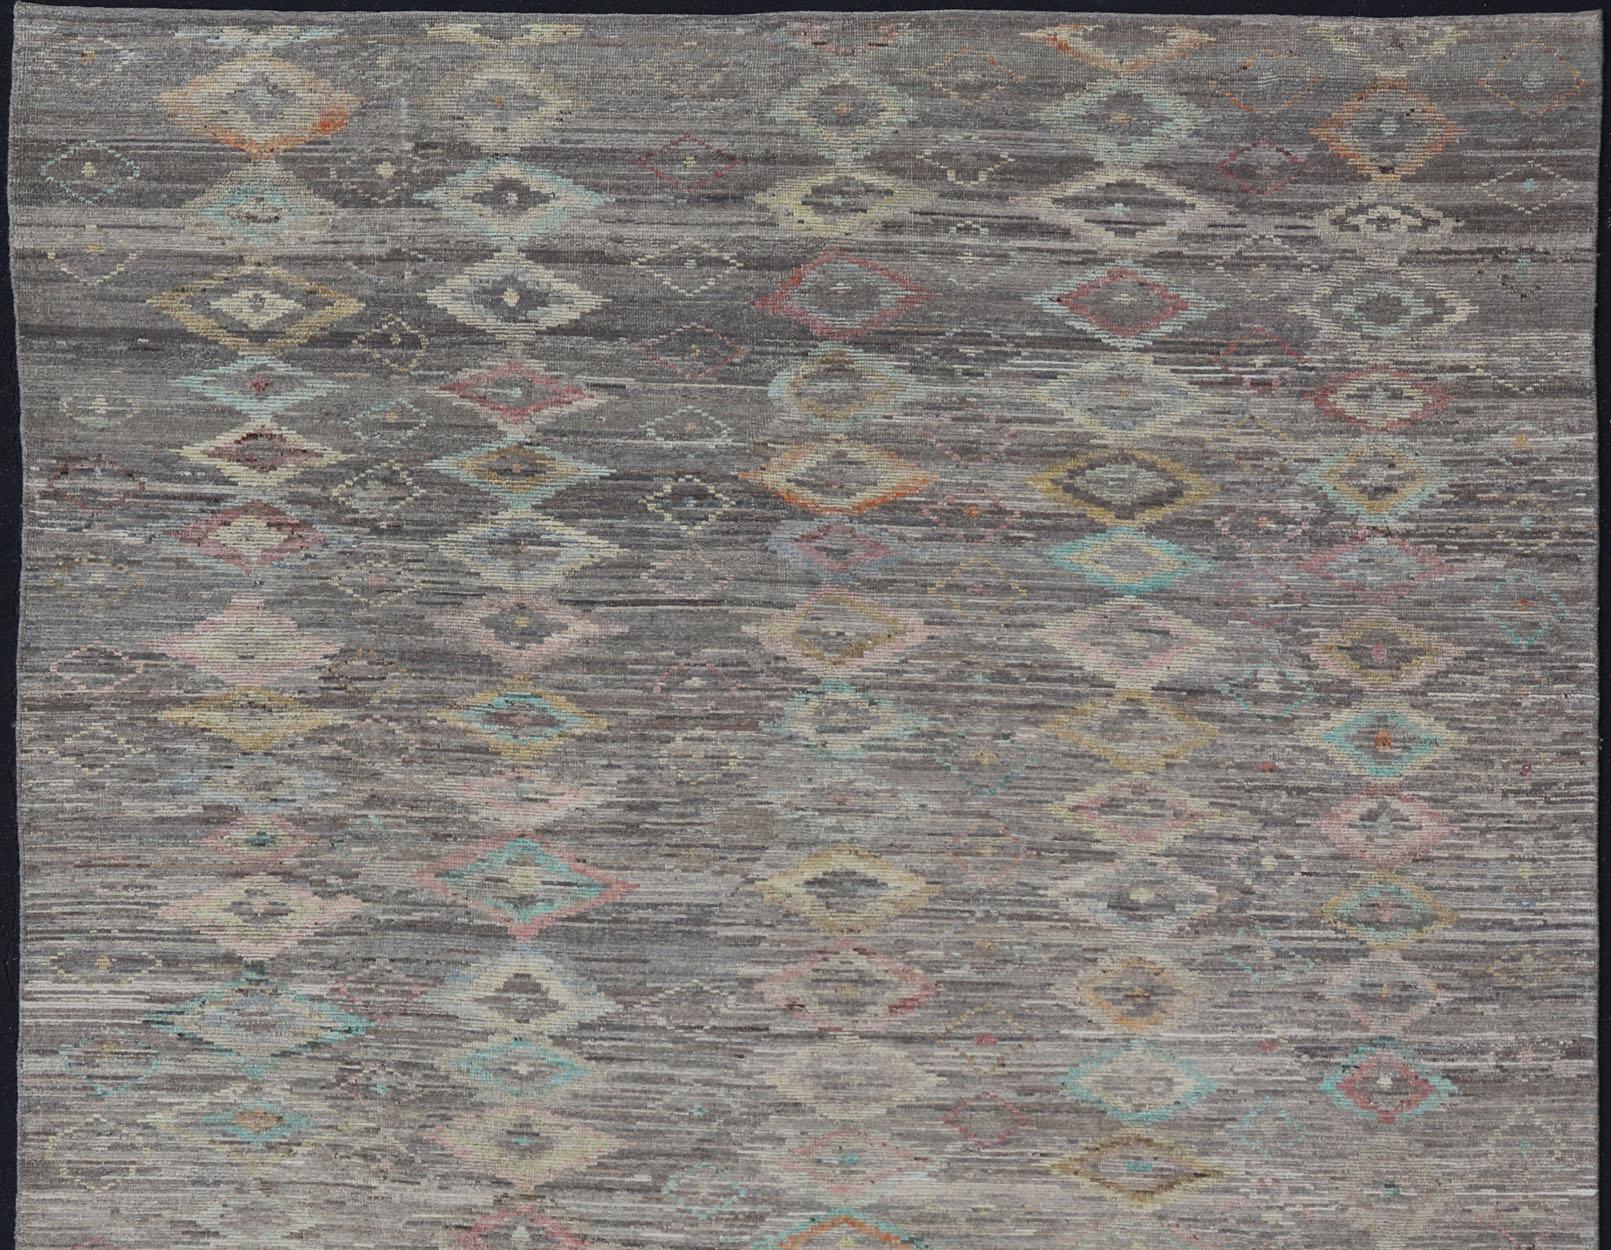 Lässiges modernes Design mit verblassten Farben auf einem neutralen und grauen Hintergrund, Keivan Woven Arts / Teppich AFG-36117, Herkunftsland / Typ: Afghanistan / Marokko Stammes-, moderne lässig.

Das Design dieses Florteppichs eignet sich